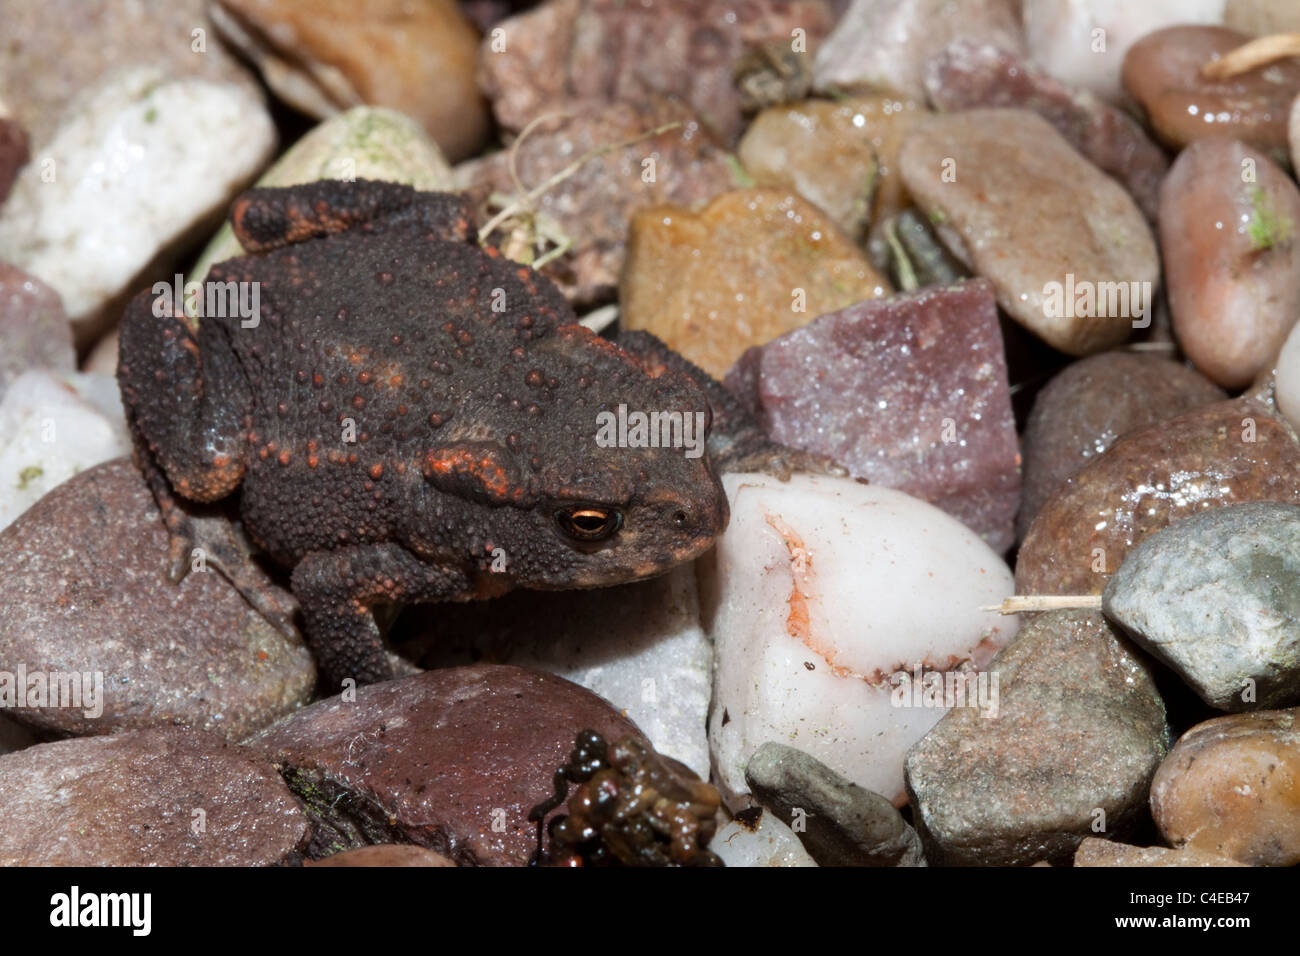 Young common toad (Bufo bufo) Kent, England, UK Stock Photo